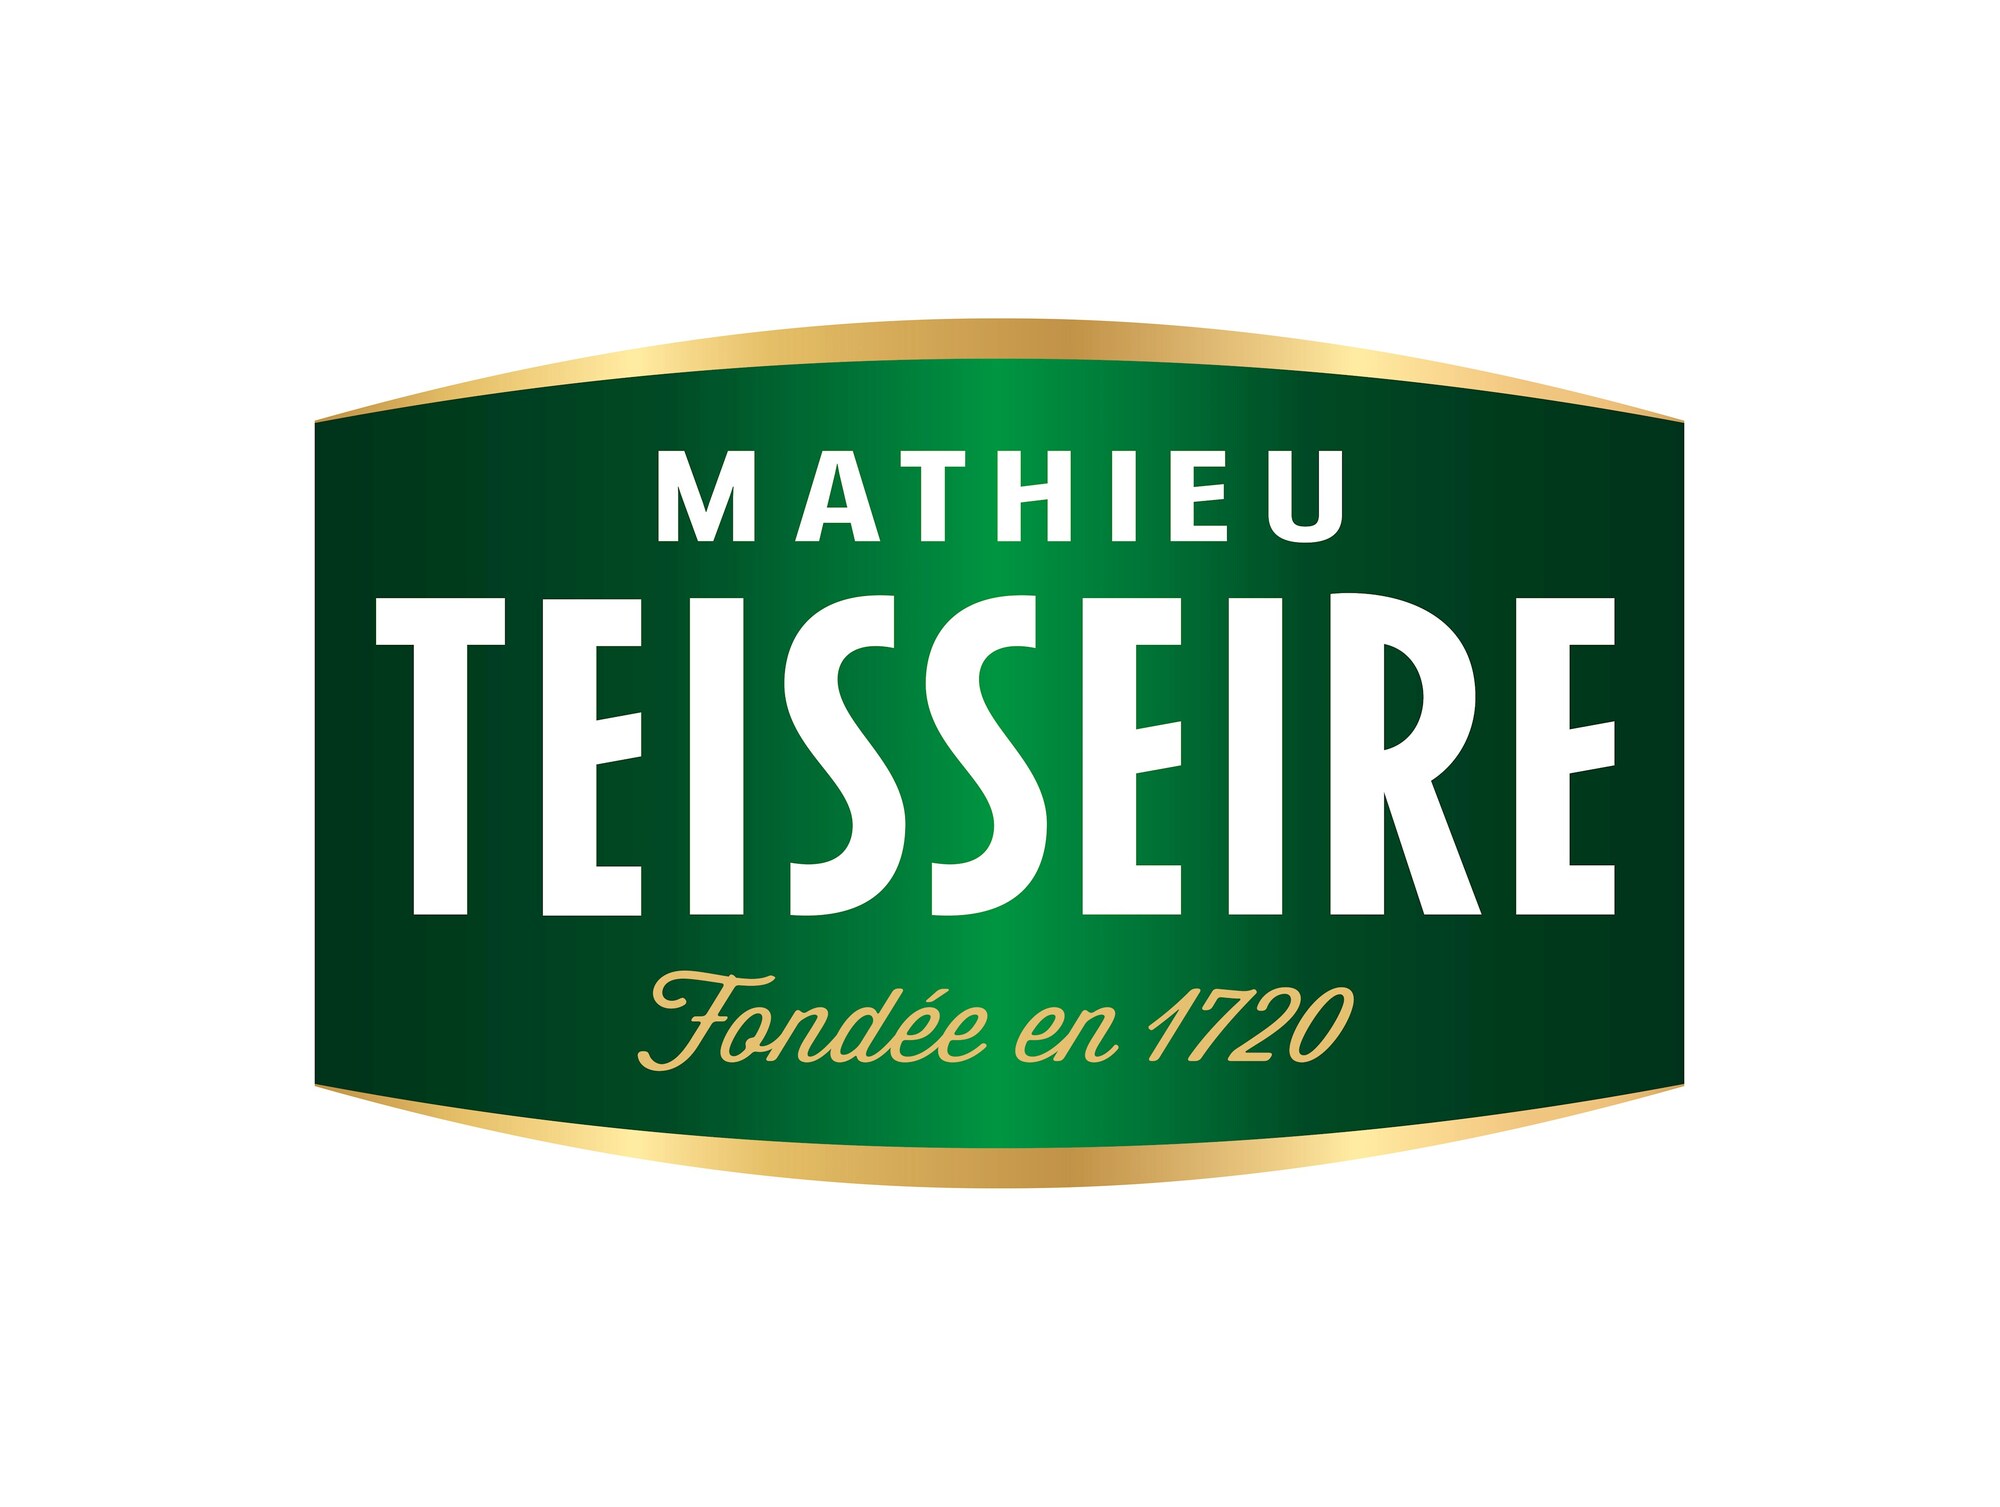 Mathieu Teisseire